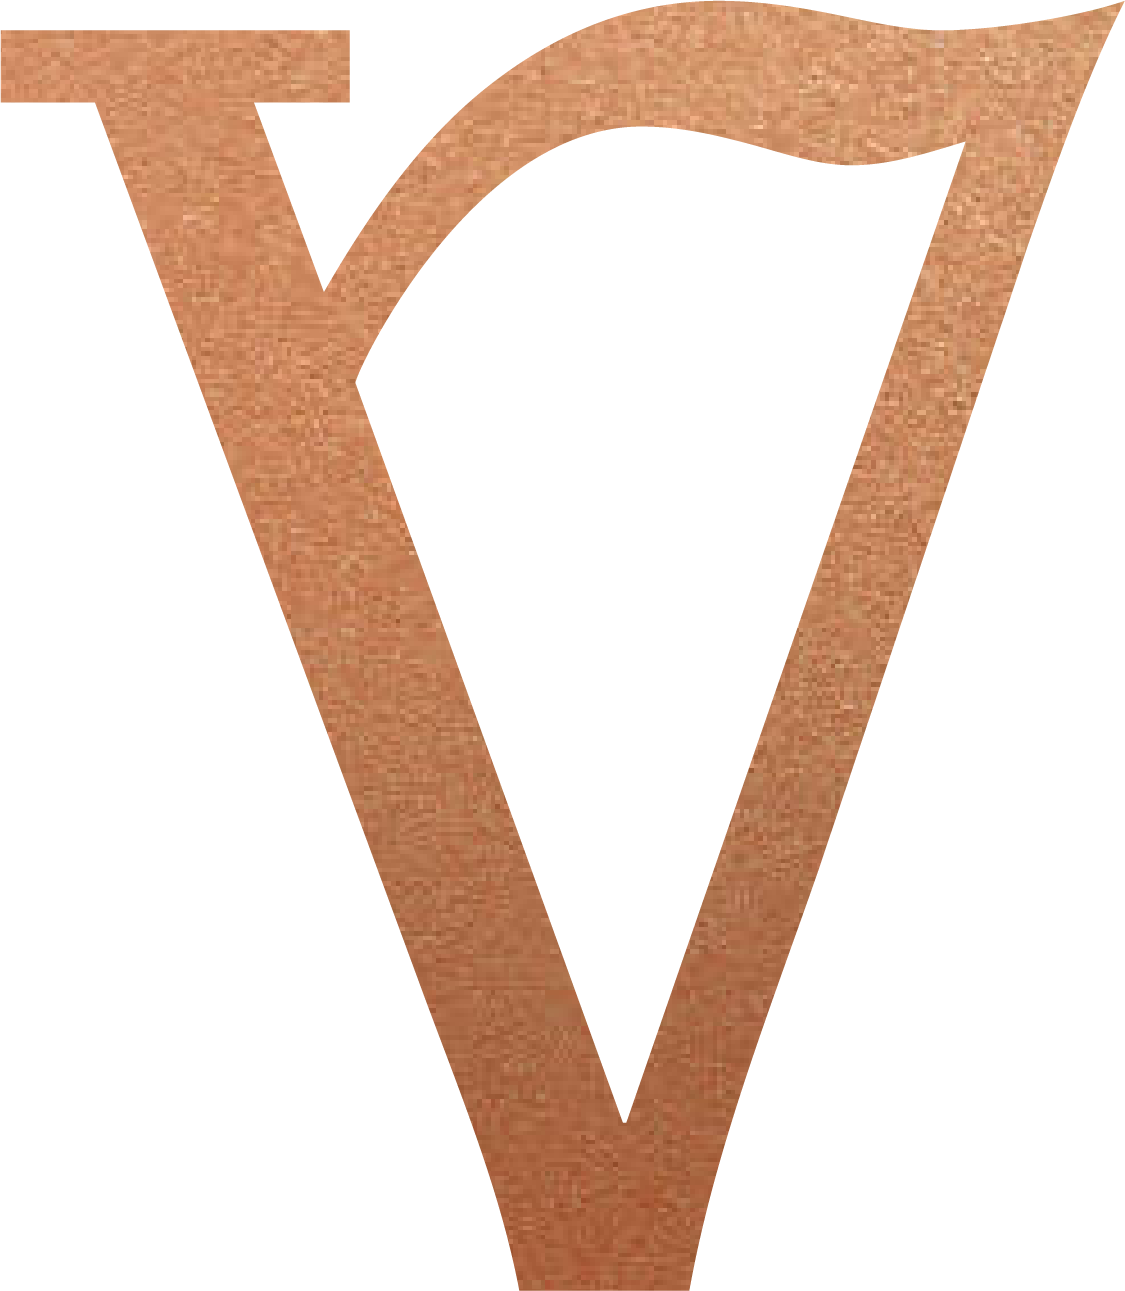 Aytekin Viduşlu İnşaat Logo